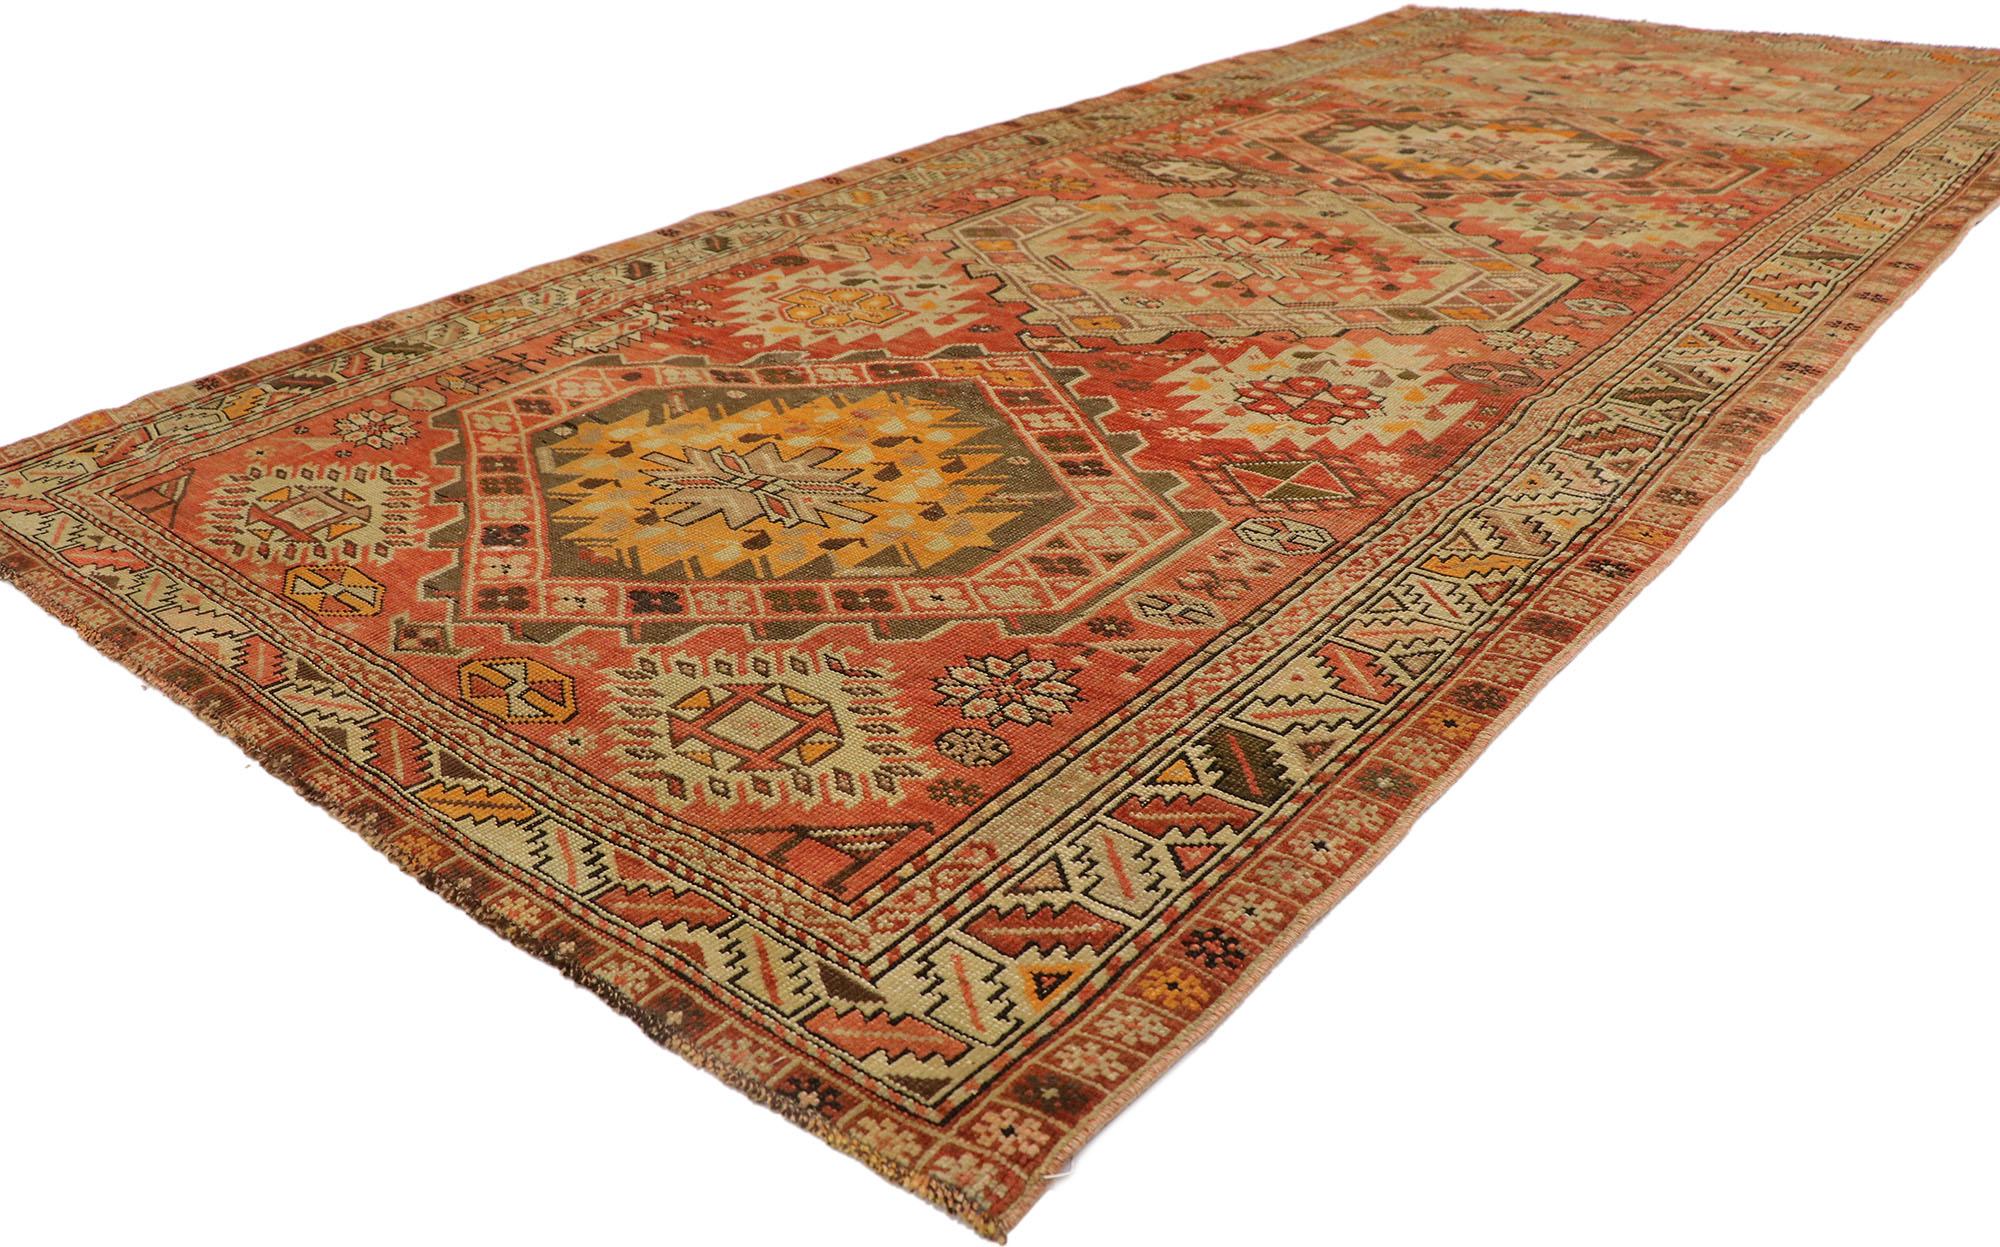 53655 Vintage Turkish Oushak Rug, 04'09 x 10'02.
Dieser handgeknüpfte türkische Oushak-Teppich aus Wolle versprüht nomadischen Charme und Stammesflair. Seine gewebte Pracht zeigt ein faszinierendes geometrisches Muster und eine kräftige erdige